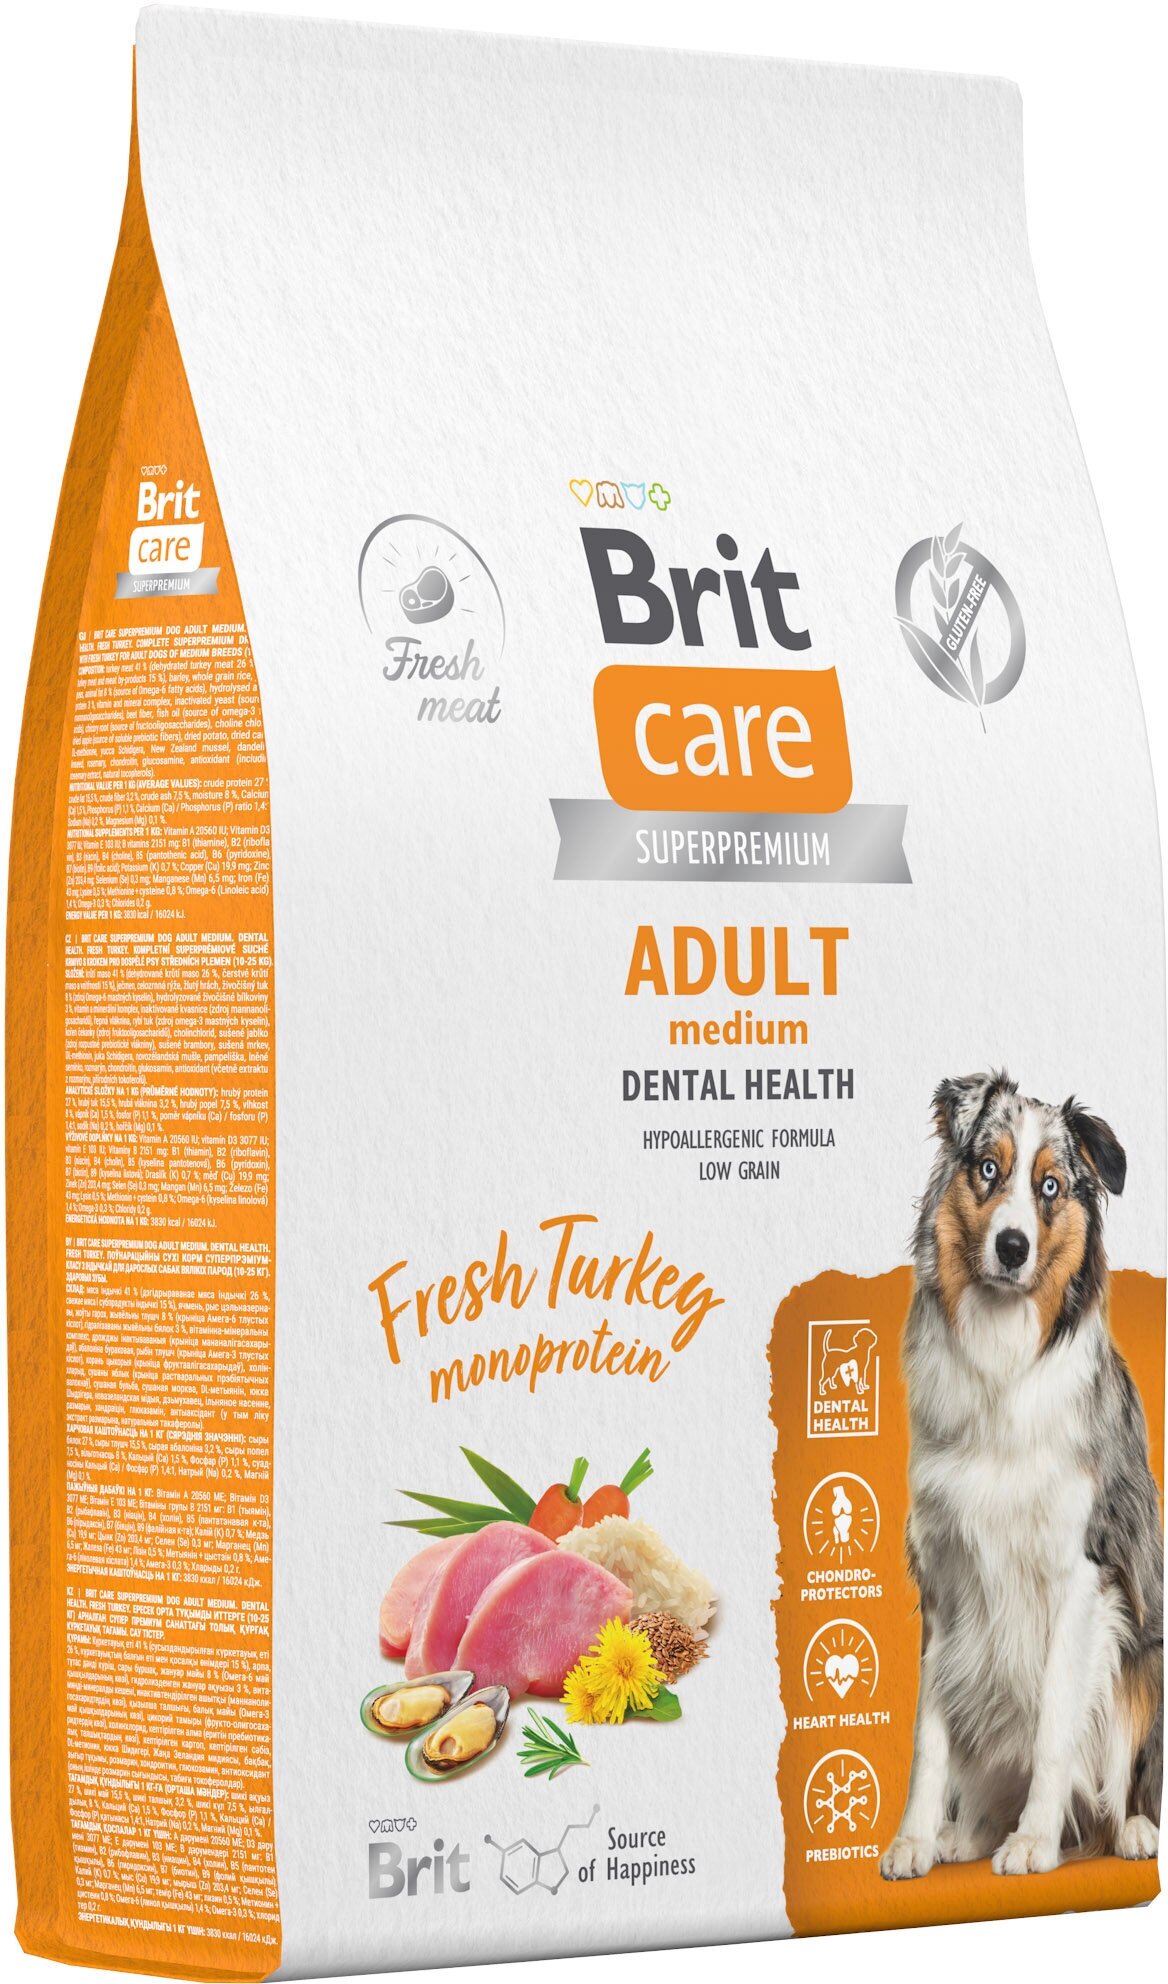 Сухой корм для собак средних пород Brit Care Dog Adult M Dental Health с индейкой, 12 кг